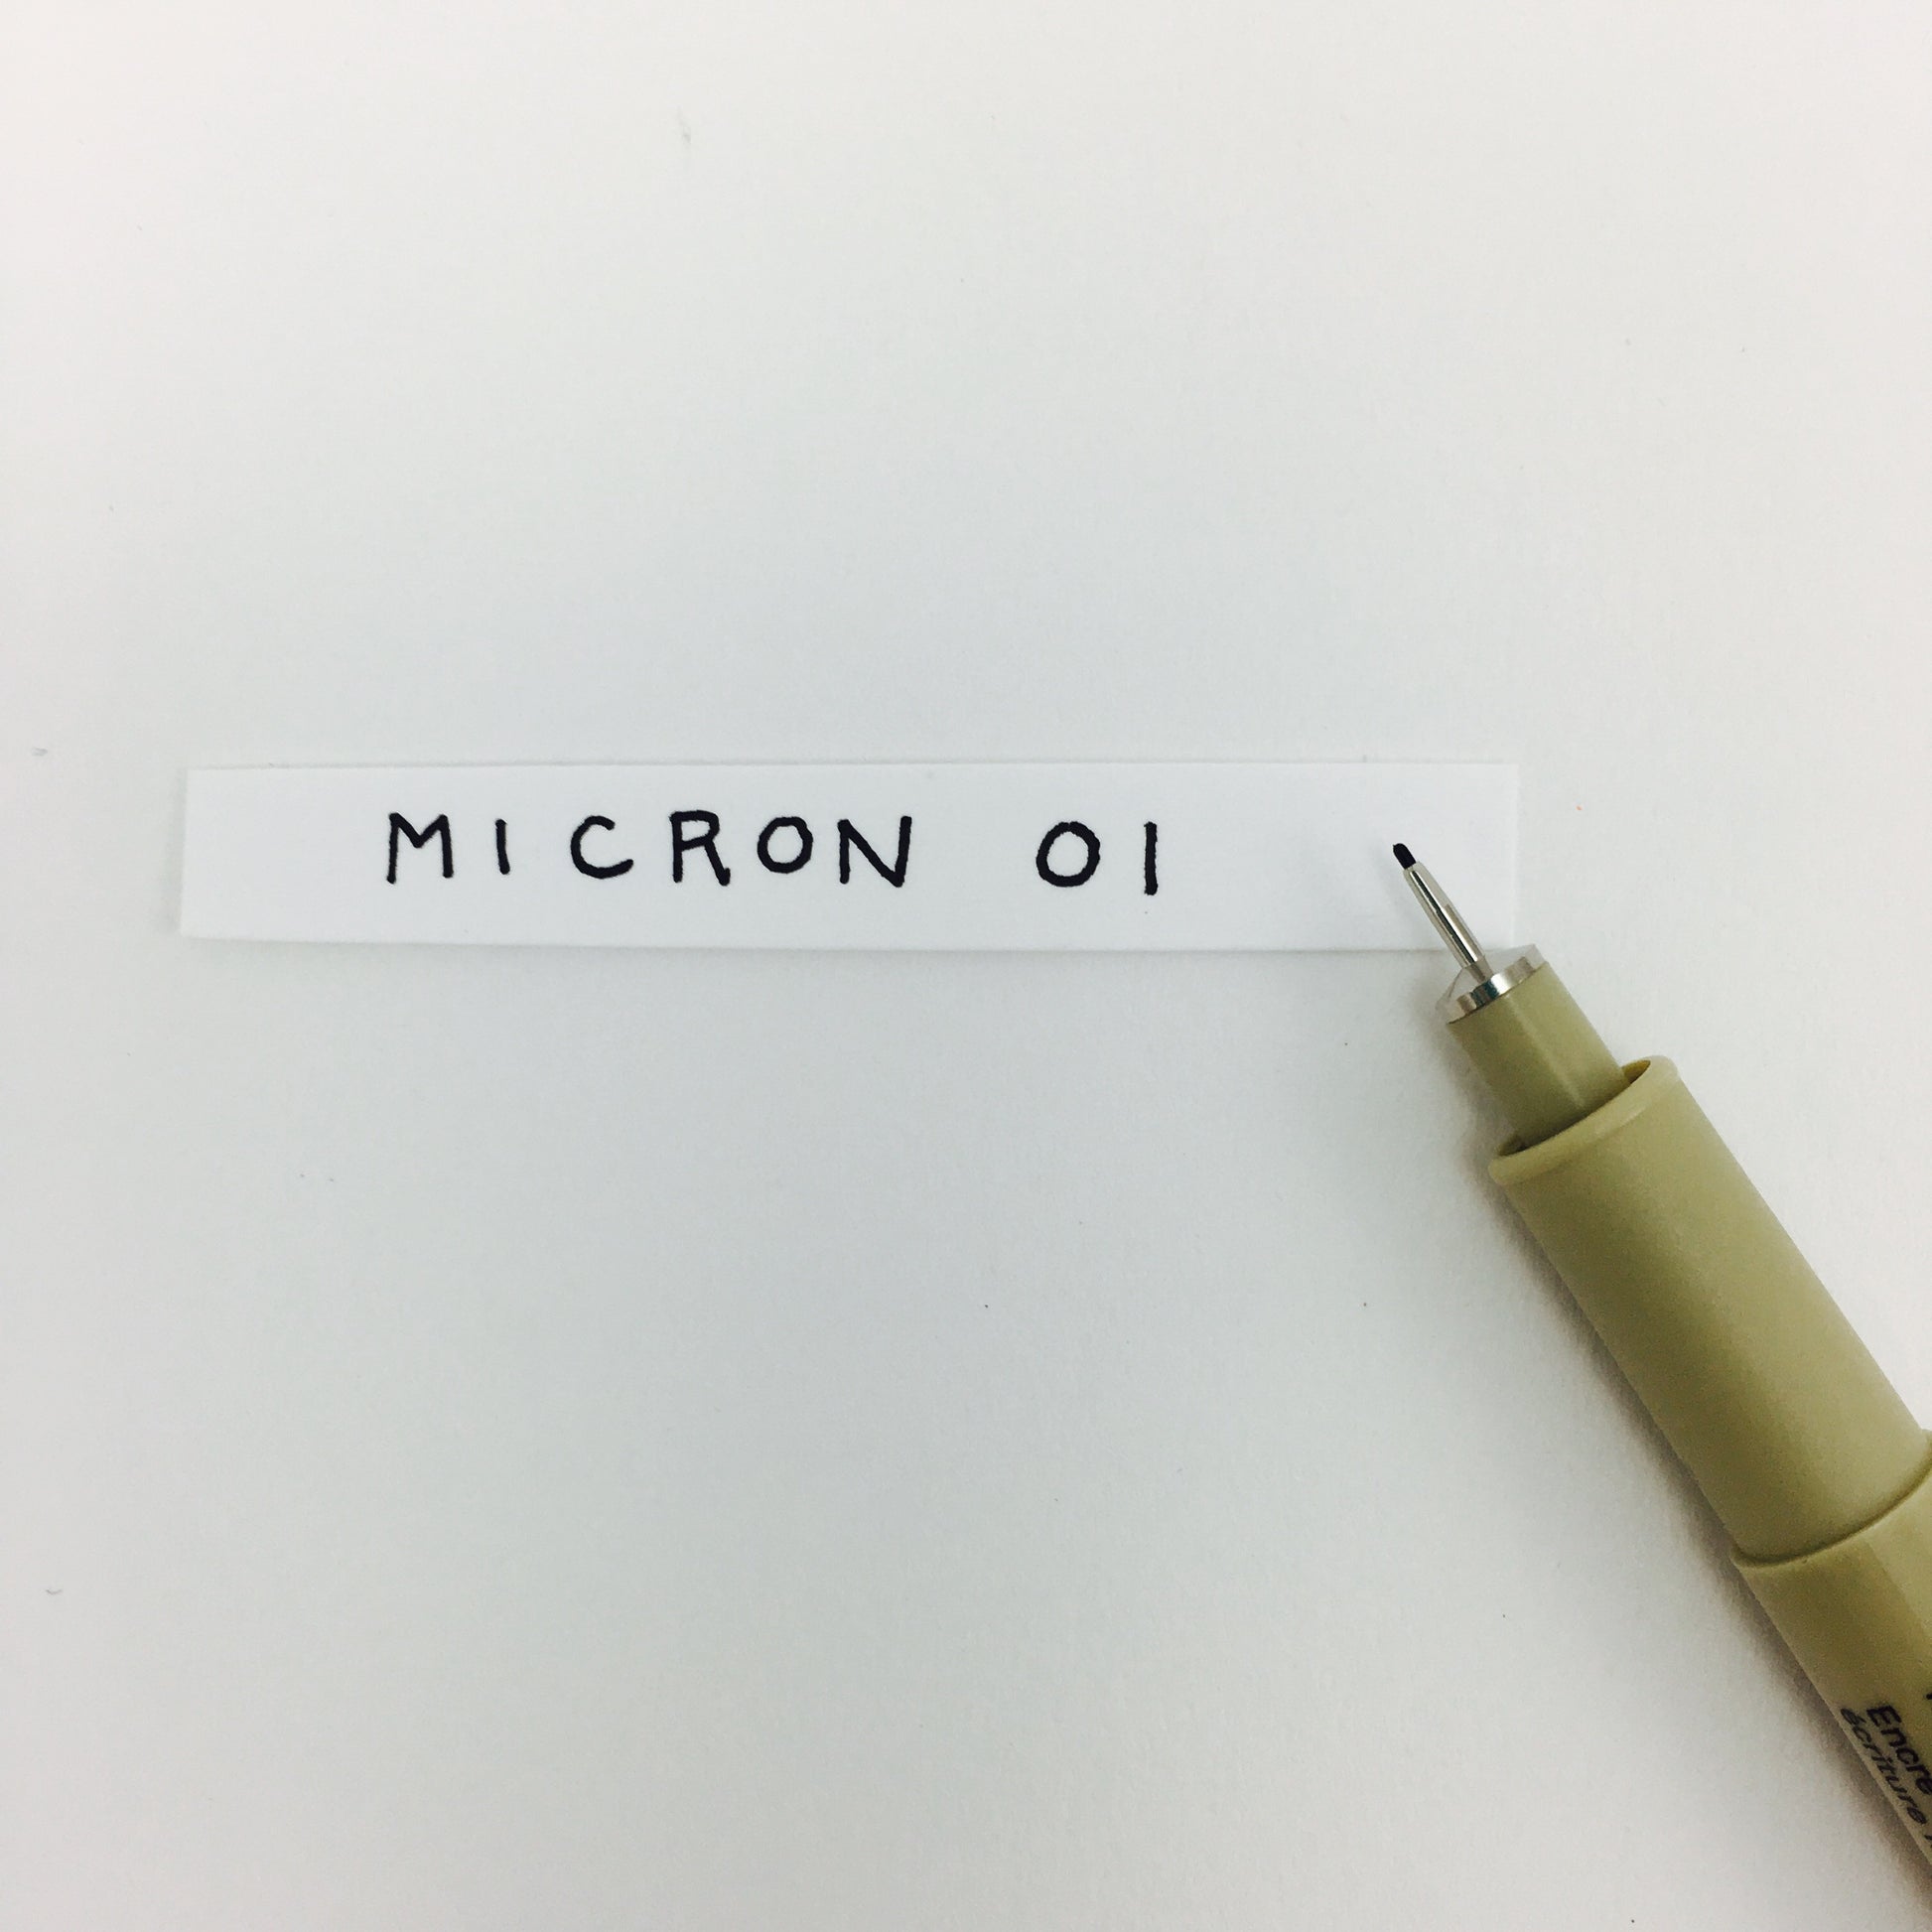 SAKURA PIGMA MICRON 01 FINE LINE COLOR PEN SET .25mm – 8 PIECE SET